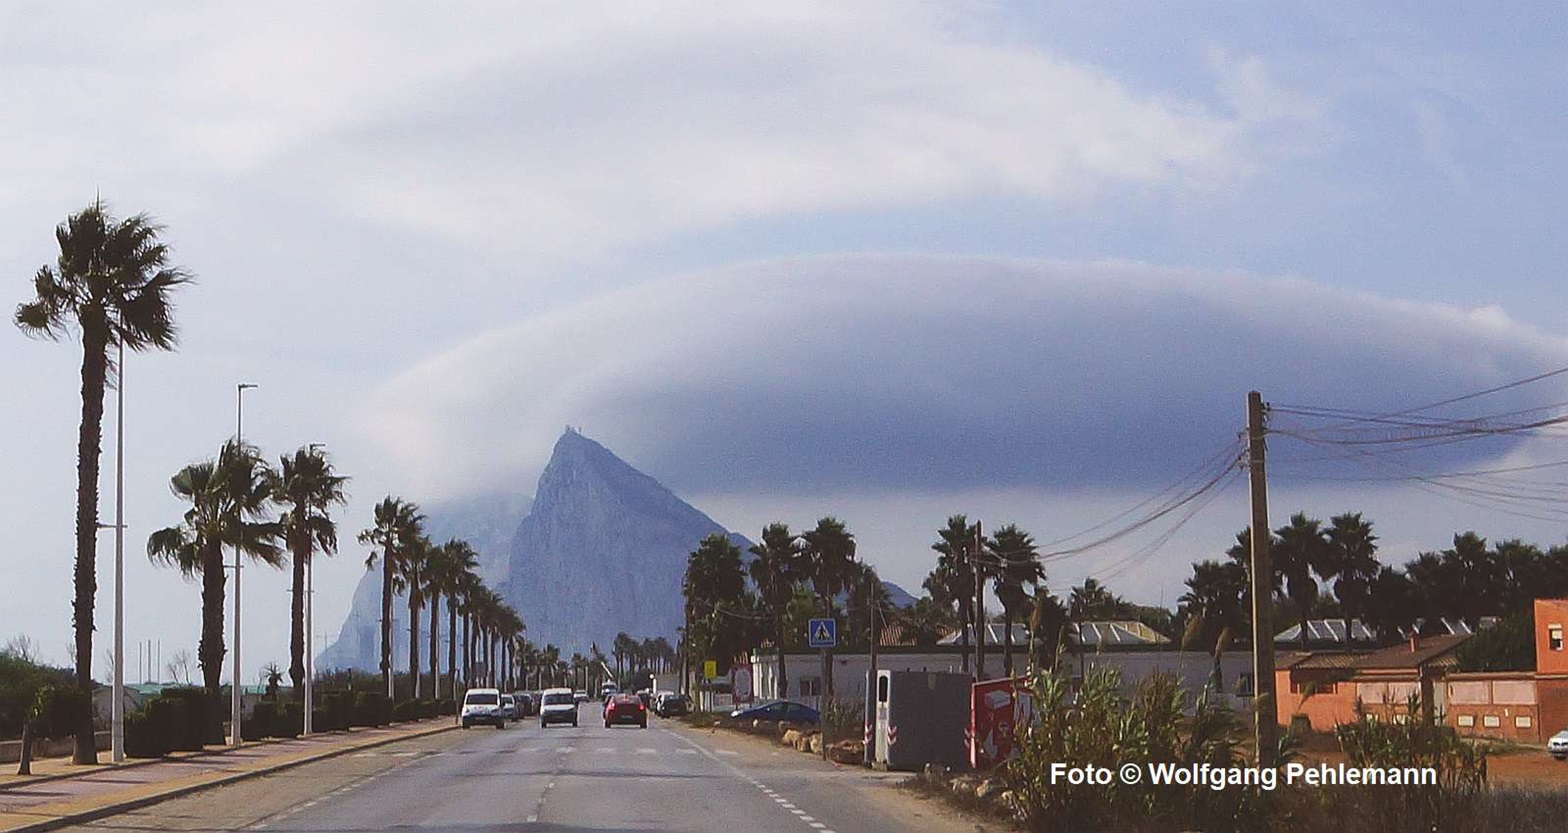 La Linea Andalusien Der Blick auf Felsen von Gibraltar mit der typischen Wolkenbildung Foto © Wolfgang Pehlemann DSC03669